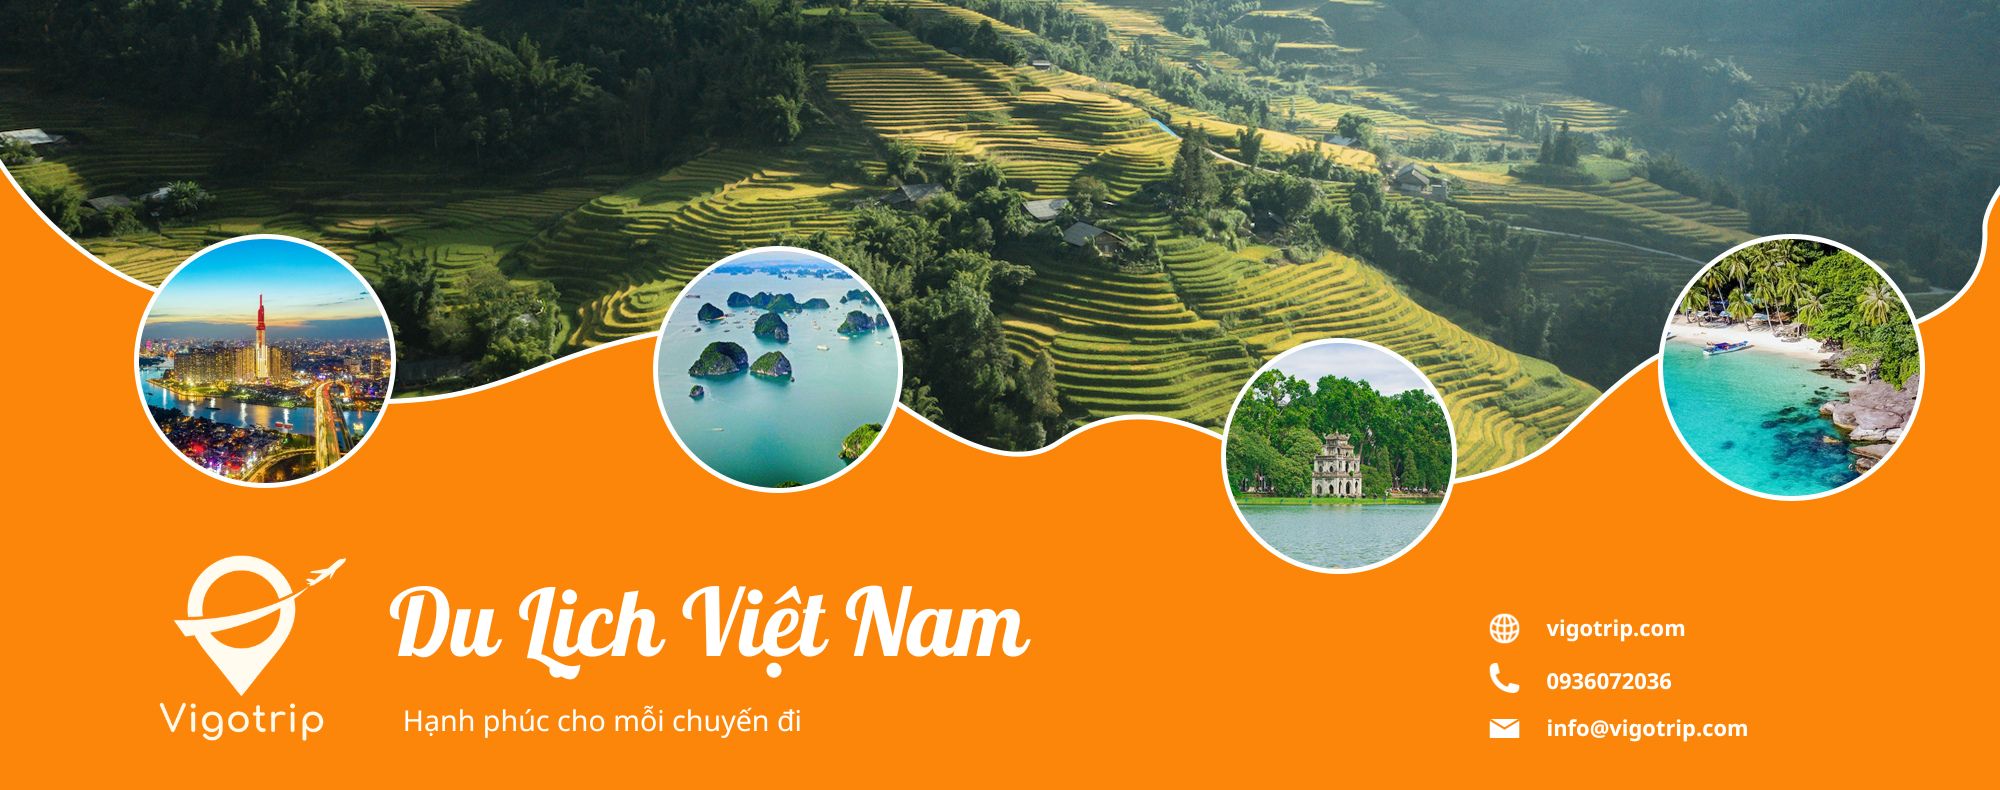 Huyện Phú Tân